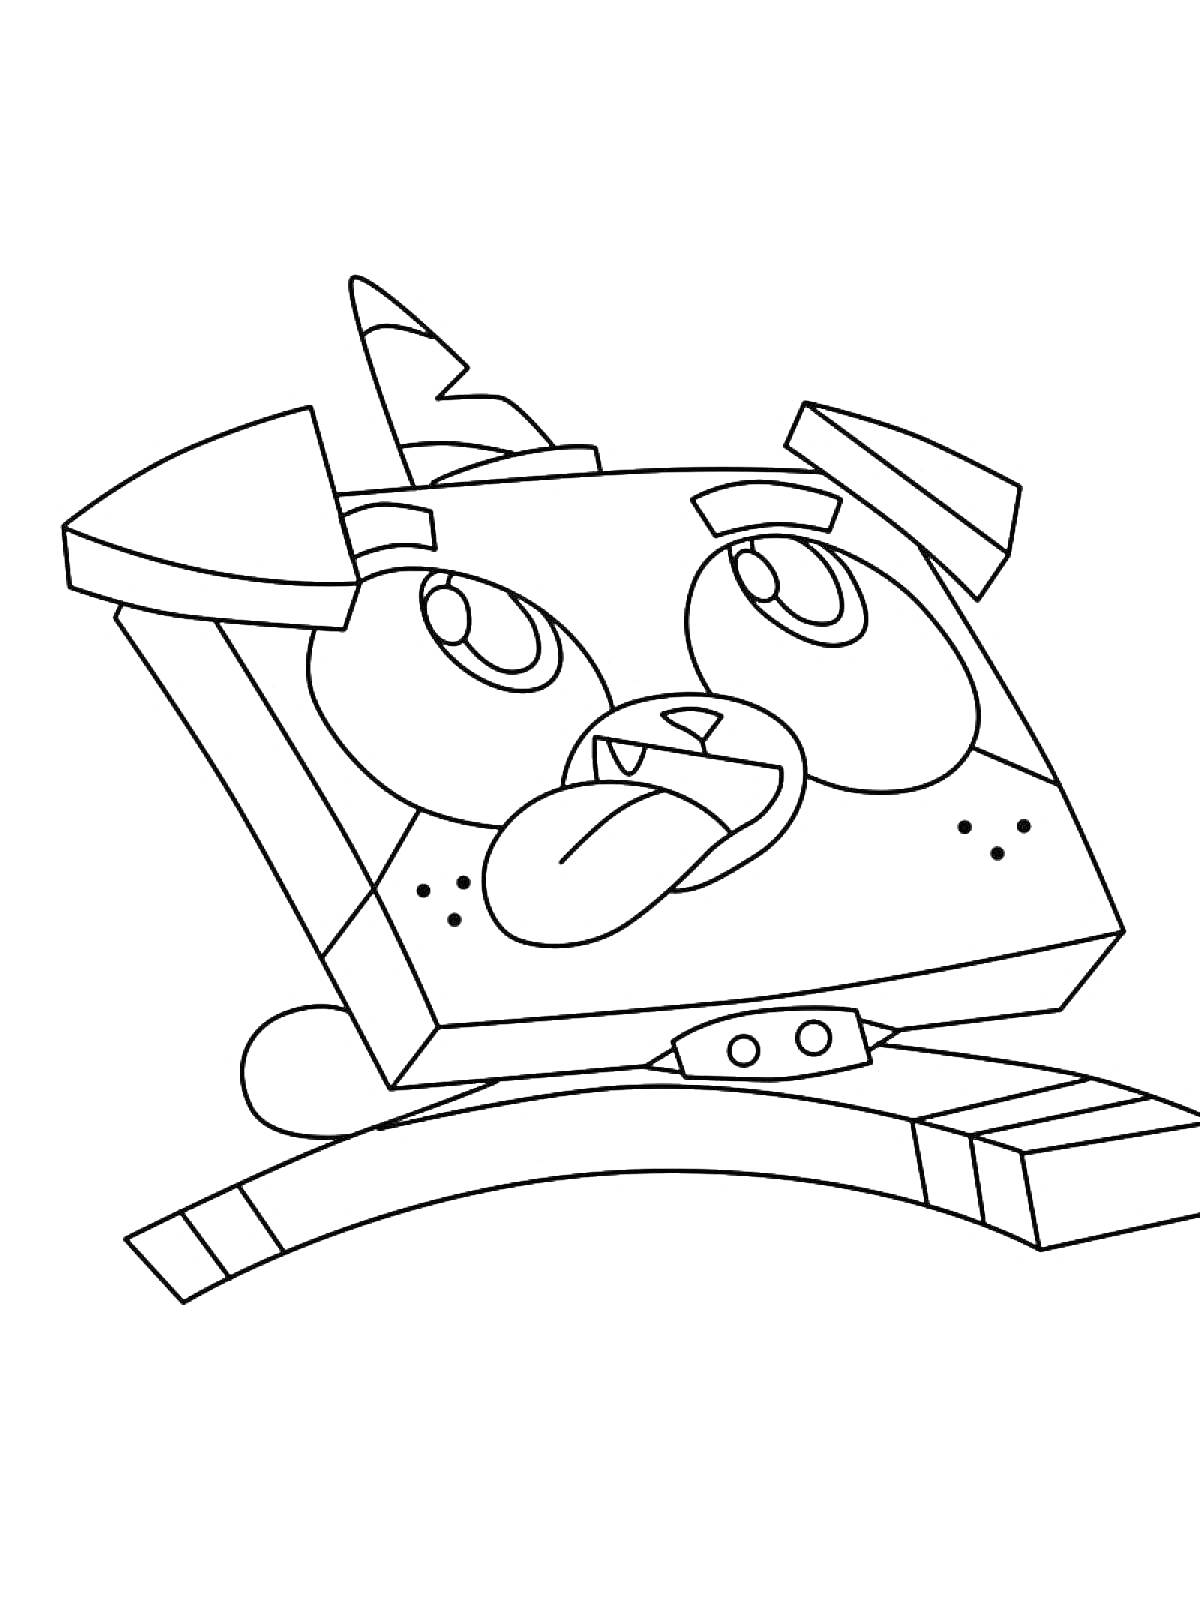 Раскраска Юникитти с ушками и рогом, показывающая язык